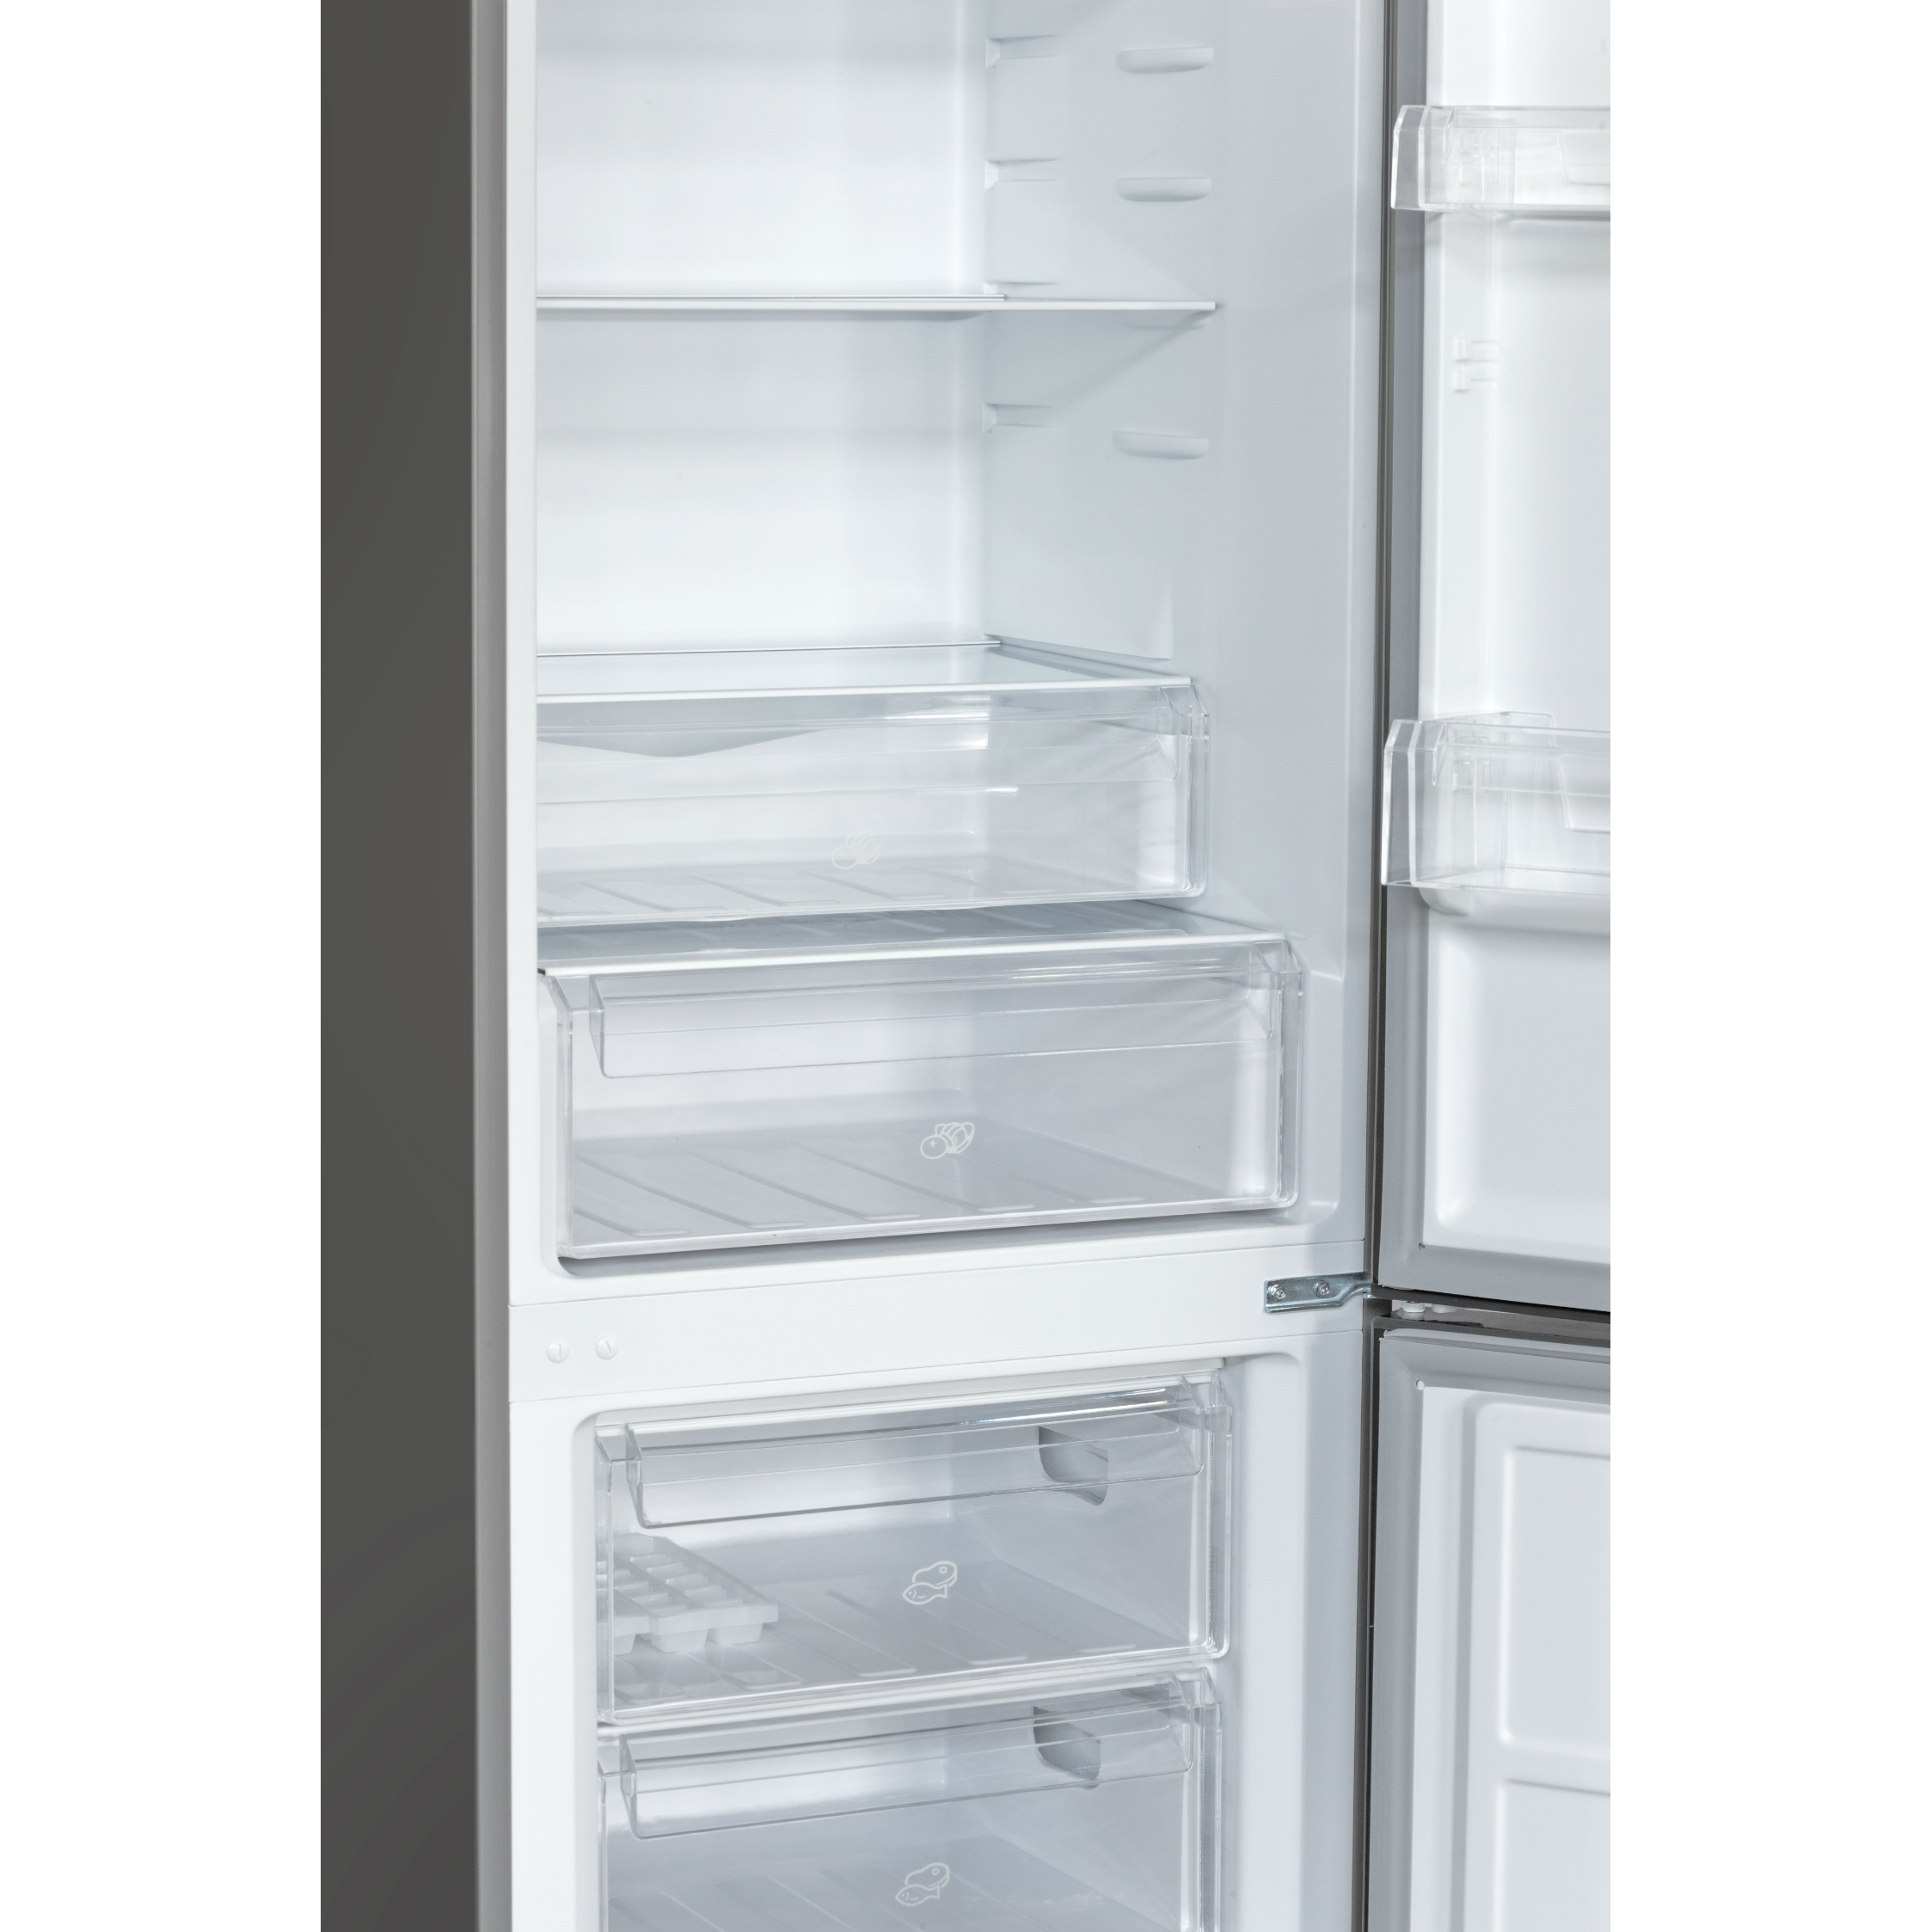 Refrigerador Combi Nordik 480 Plus Refrigeraci N Mademsa Todo Lo Que Quiero